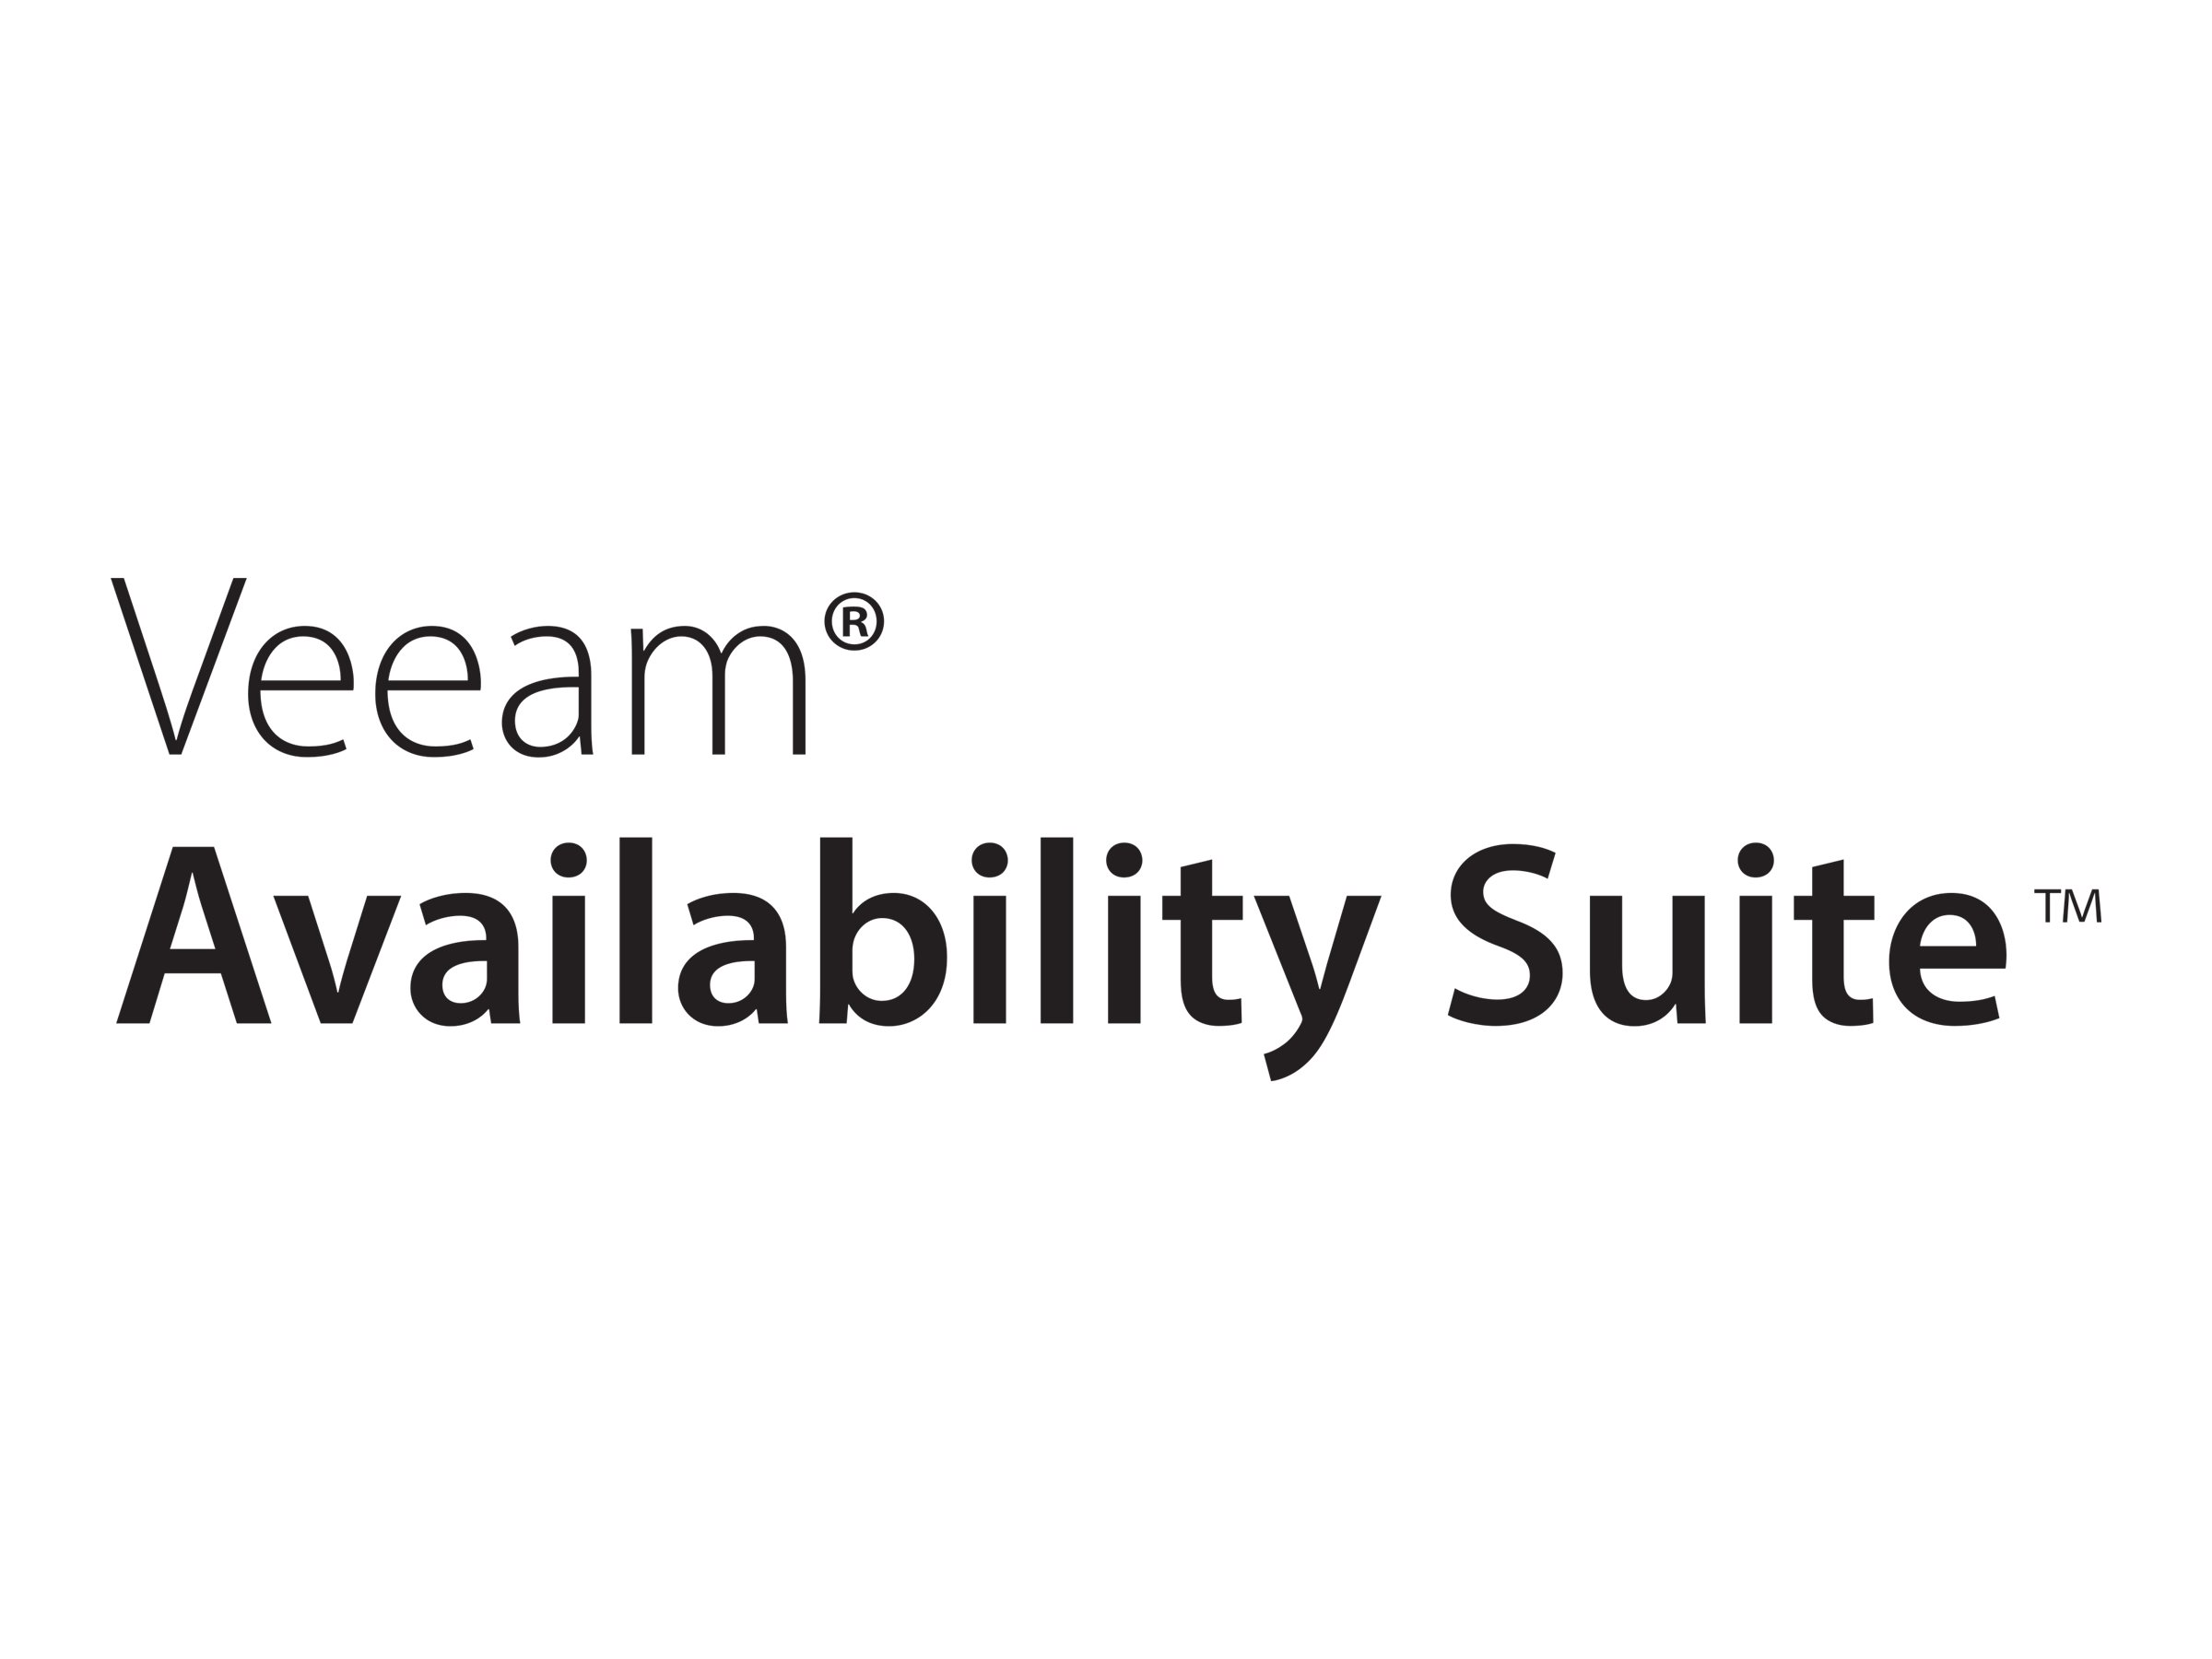 Veeam Availability Suite - Lizenz mit Vorauszahlung (3 Jahre) + Production Support - 1 Anschluss - akademisch